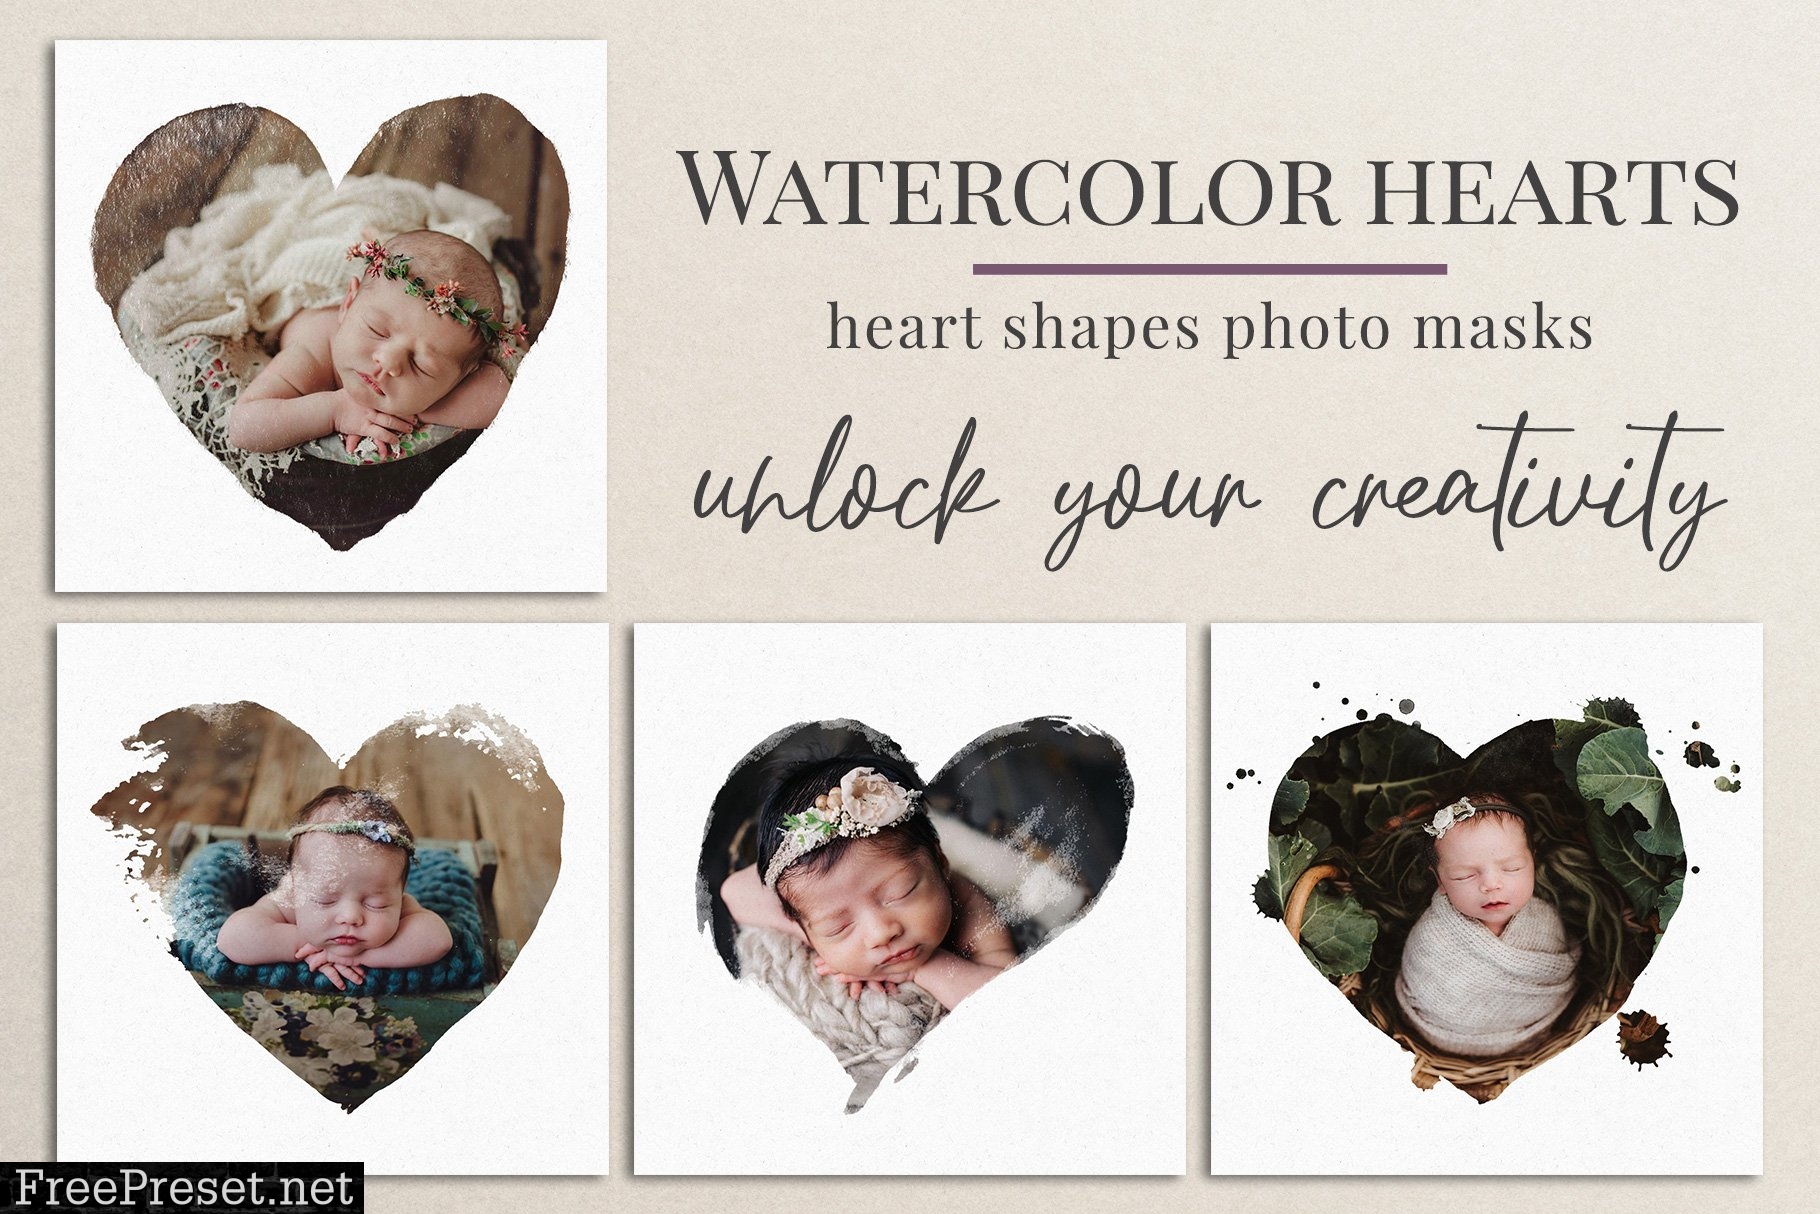 Watercolor hearts photo masks 5804185